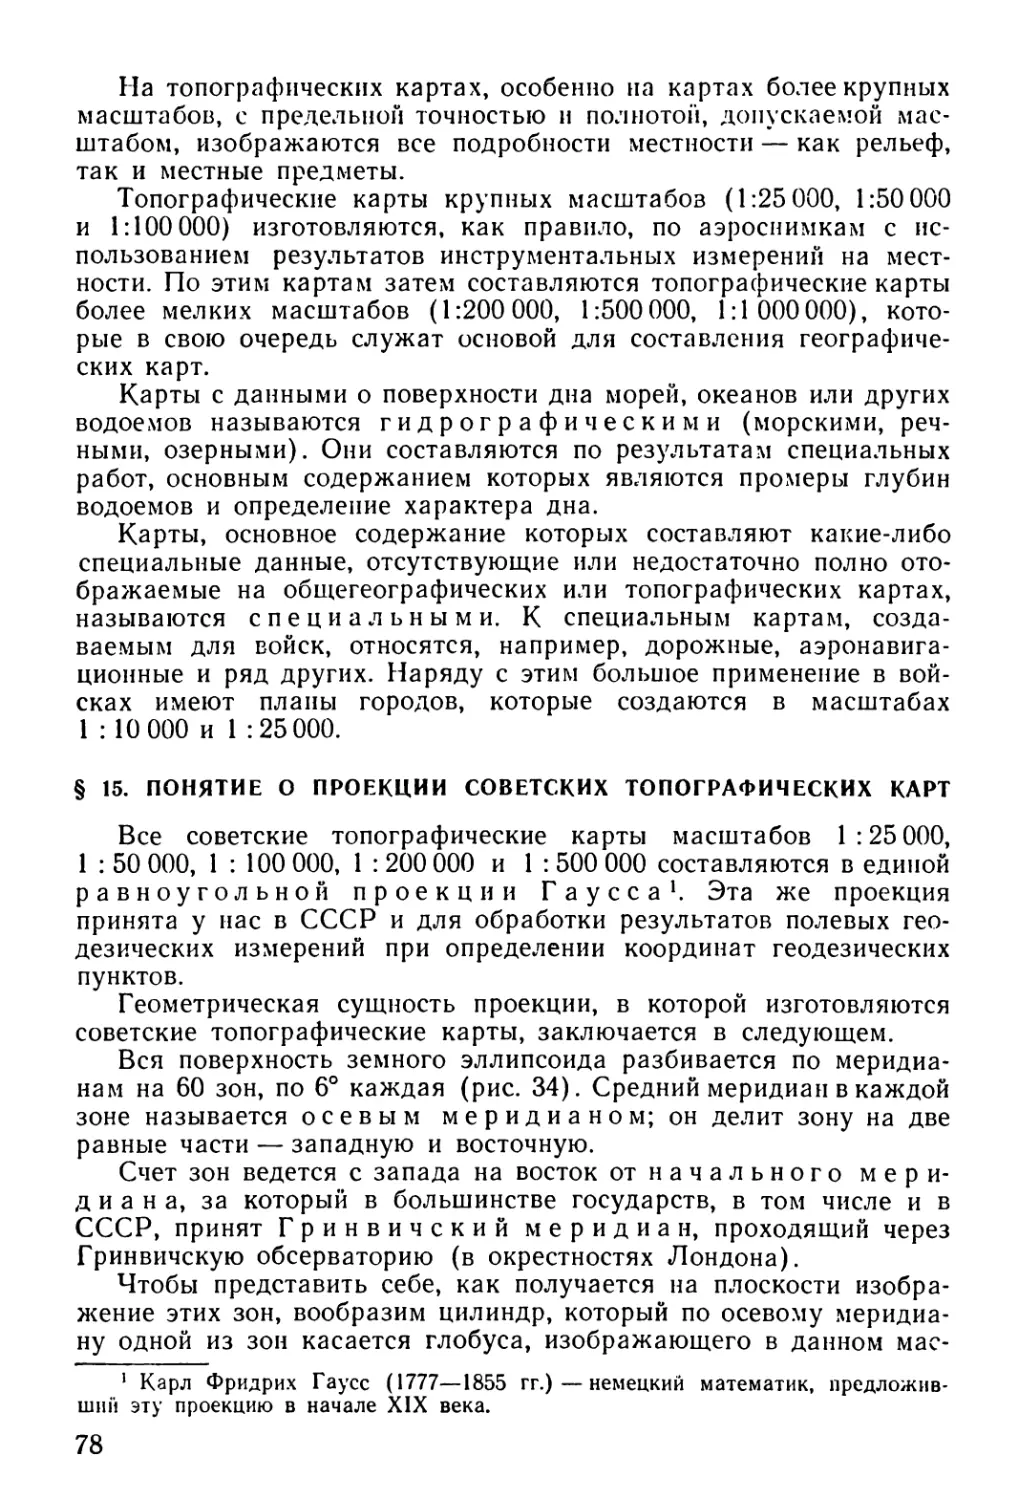 § 15. Понятие о проекции советских топографических карт